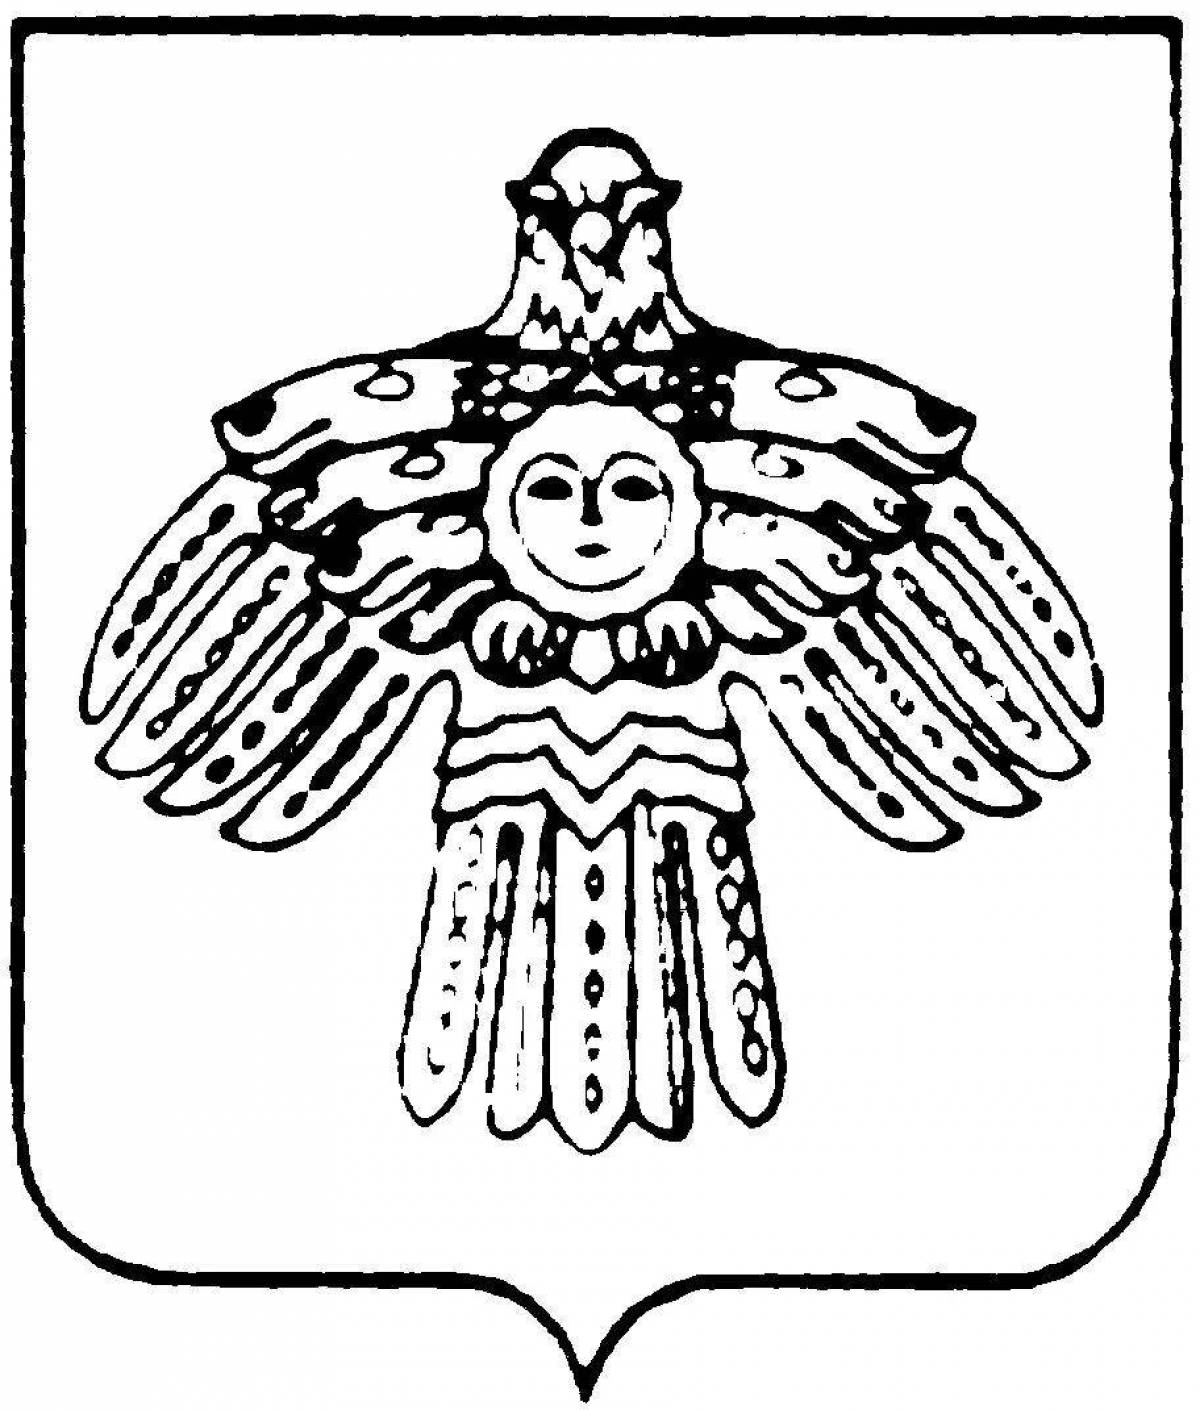 Герб Республики Коми рисунок